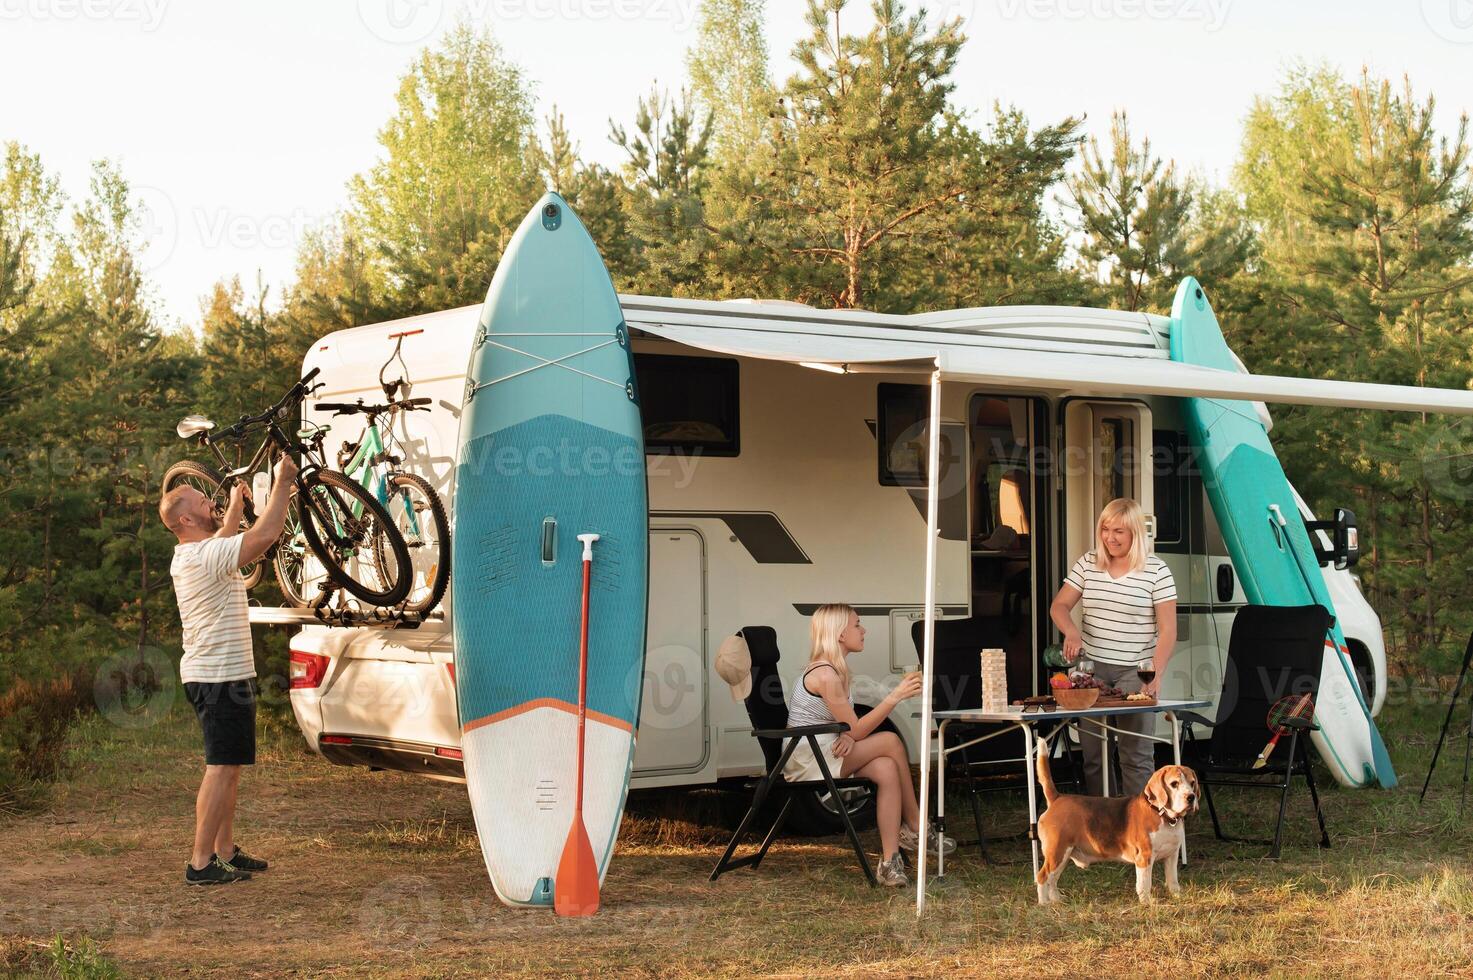 een gelukkig familie is resting dichtbij in de buurt hun camper in de Woud foto